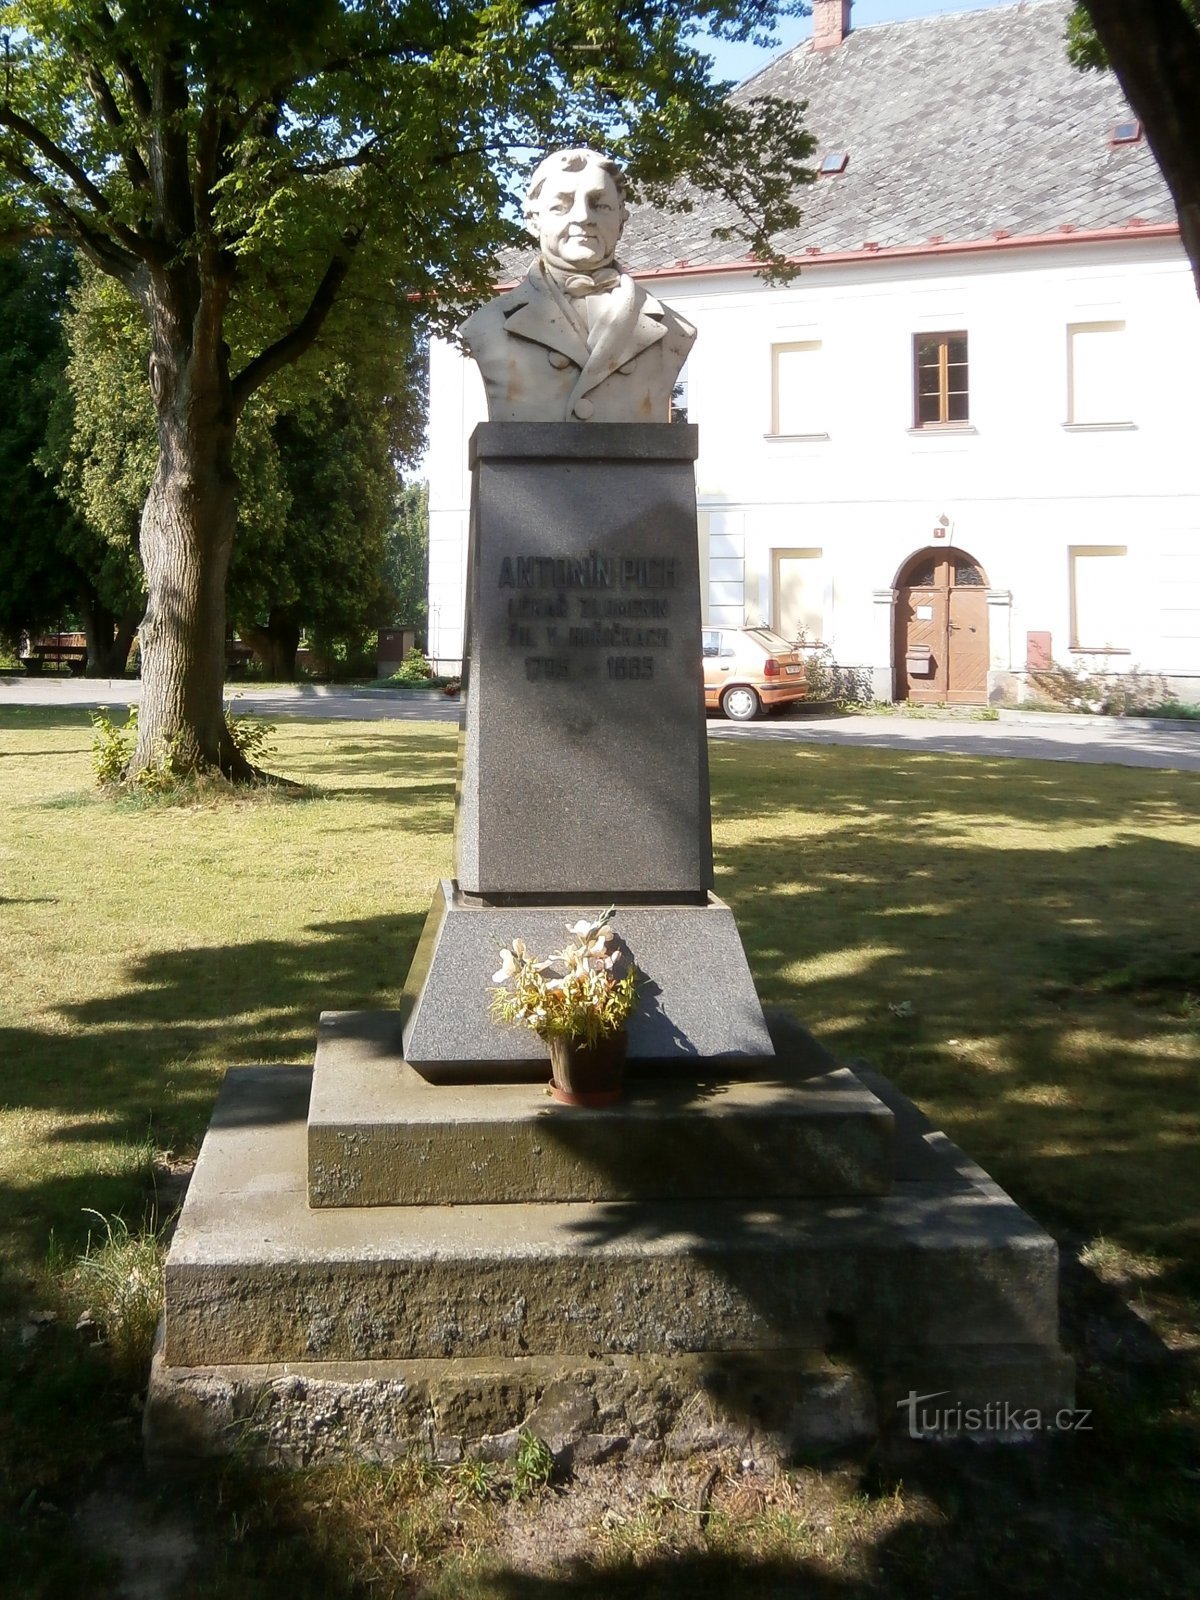 Spomenik Antonínu Pichi (Hořičky, 5.7.2017. listopada XNUMX.)